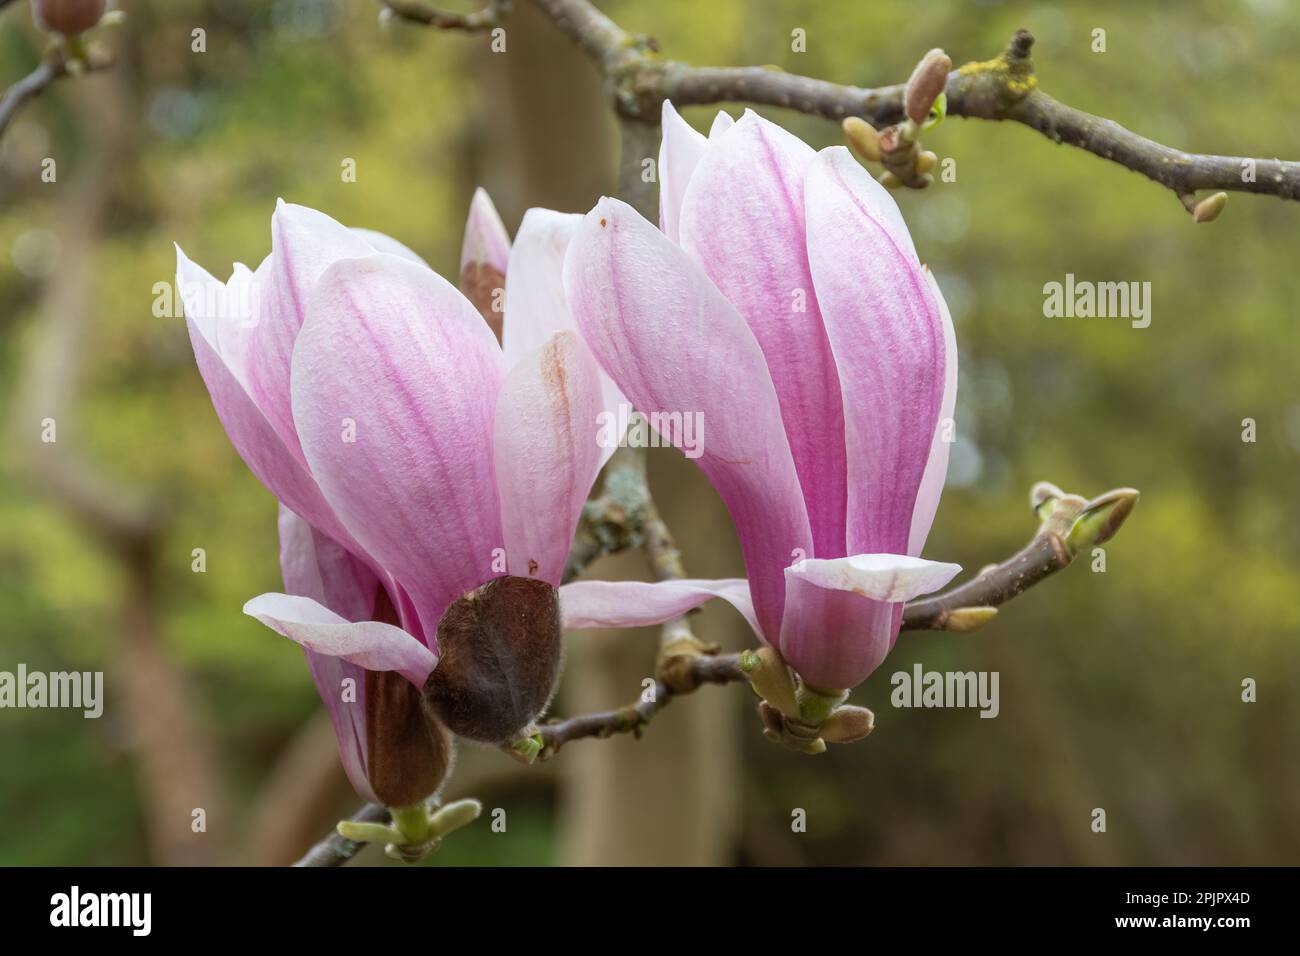 Rosafarbene Blüten oder Blüten auf Magnolia liiflora var. Gracilis Strauß oder Baum im April, Surrey, England, Großbritannien Stockfoto